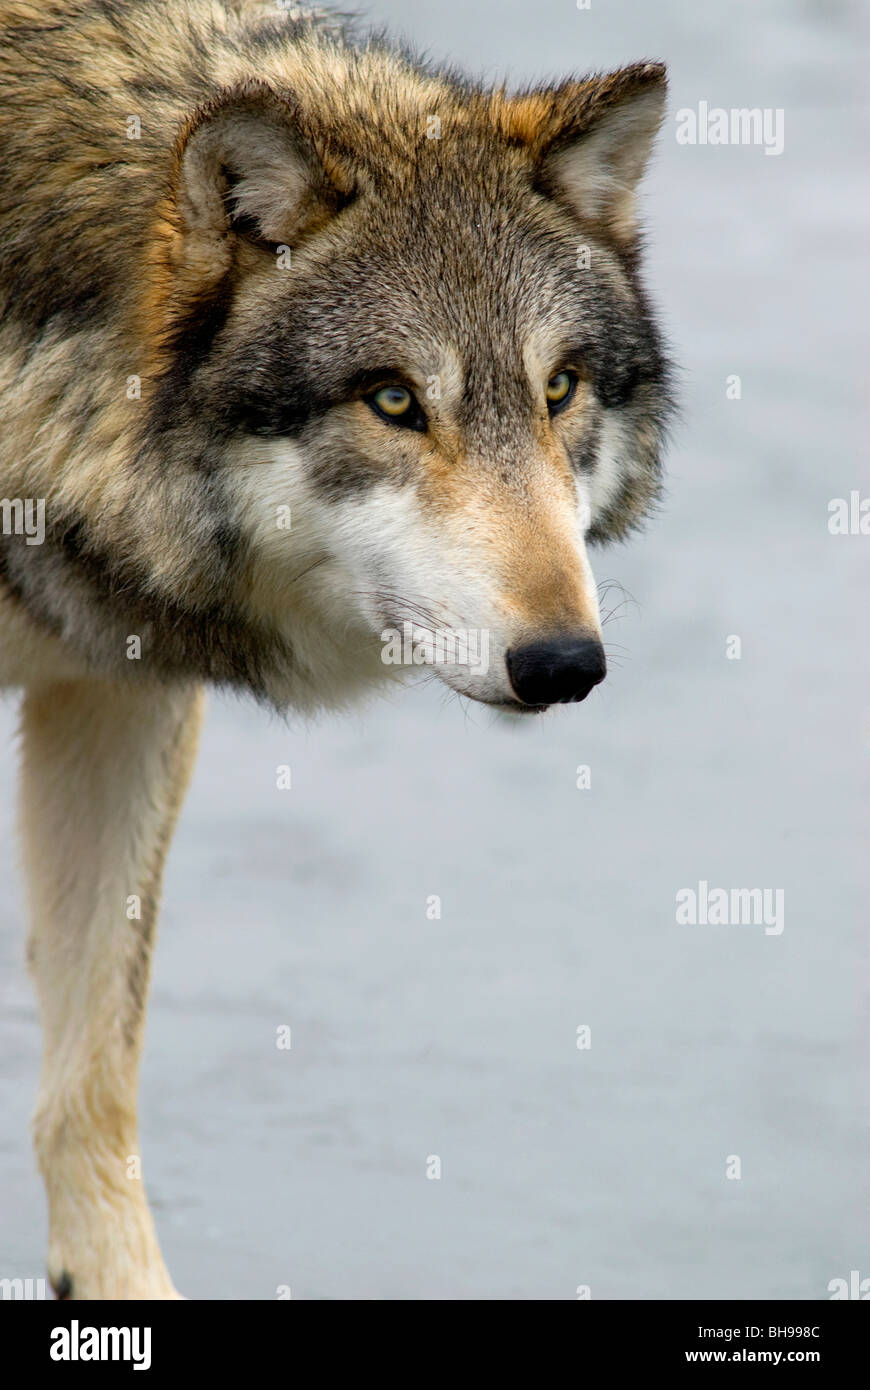 Los lobos suelen conseguir nuestra atención cuando lo suyo. En esta foto el lobo obviamente está enfocado en algo. Foto de stock